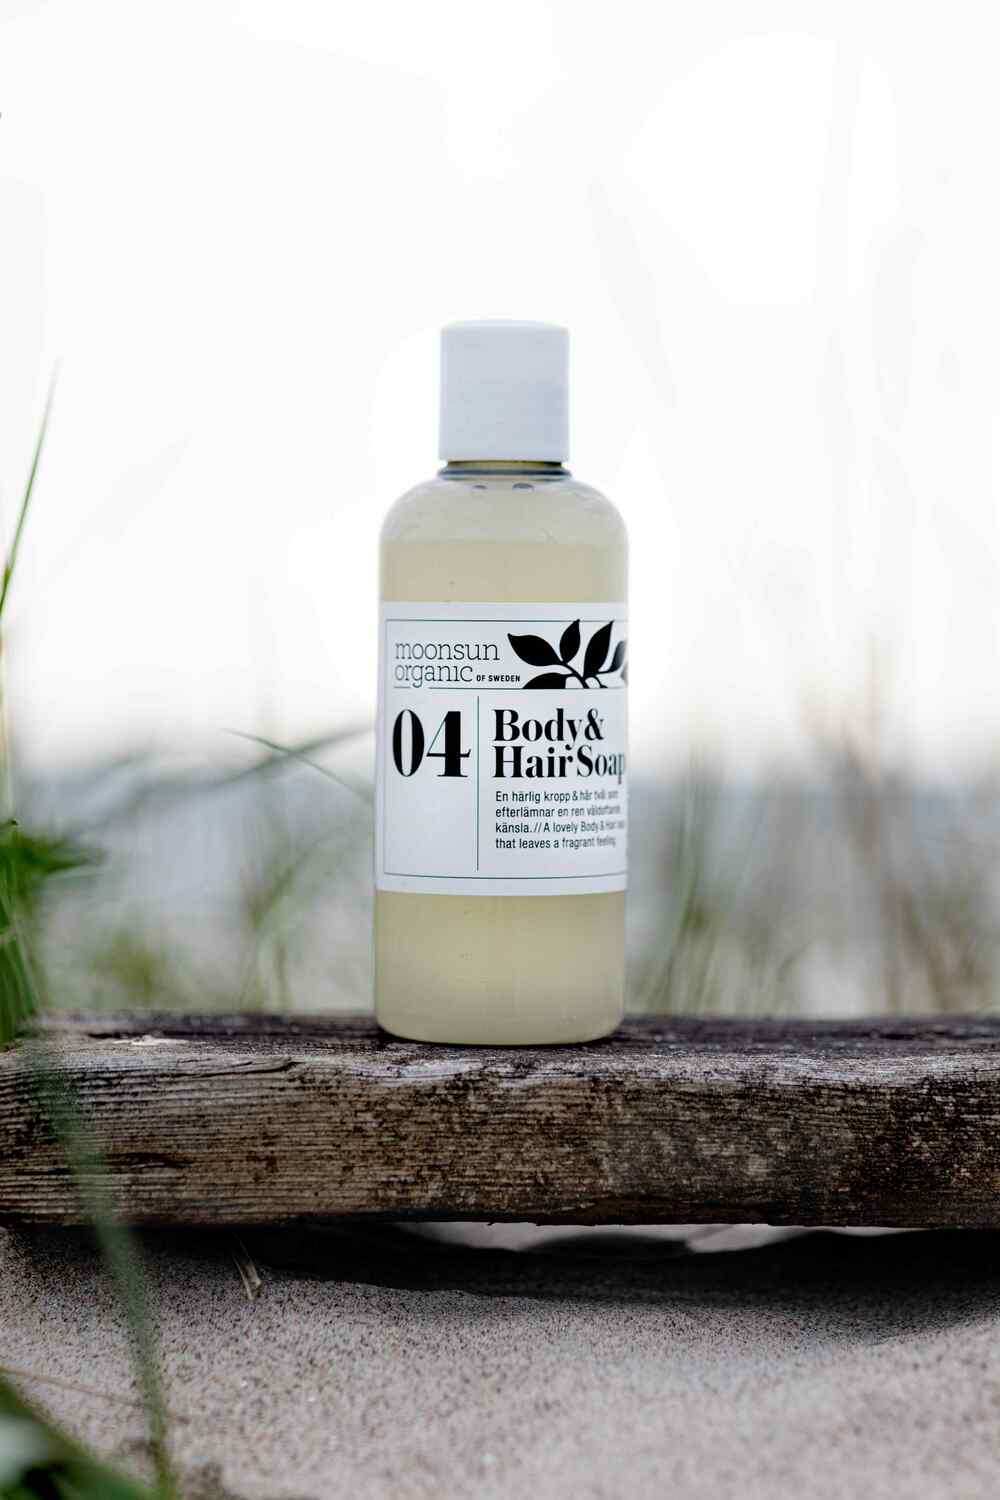 Moonsun Organic Body & Hair Soap